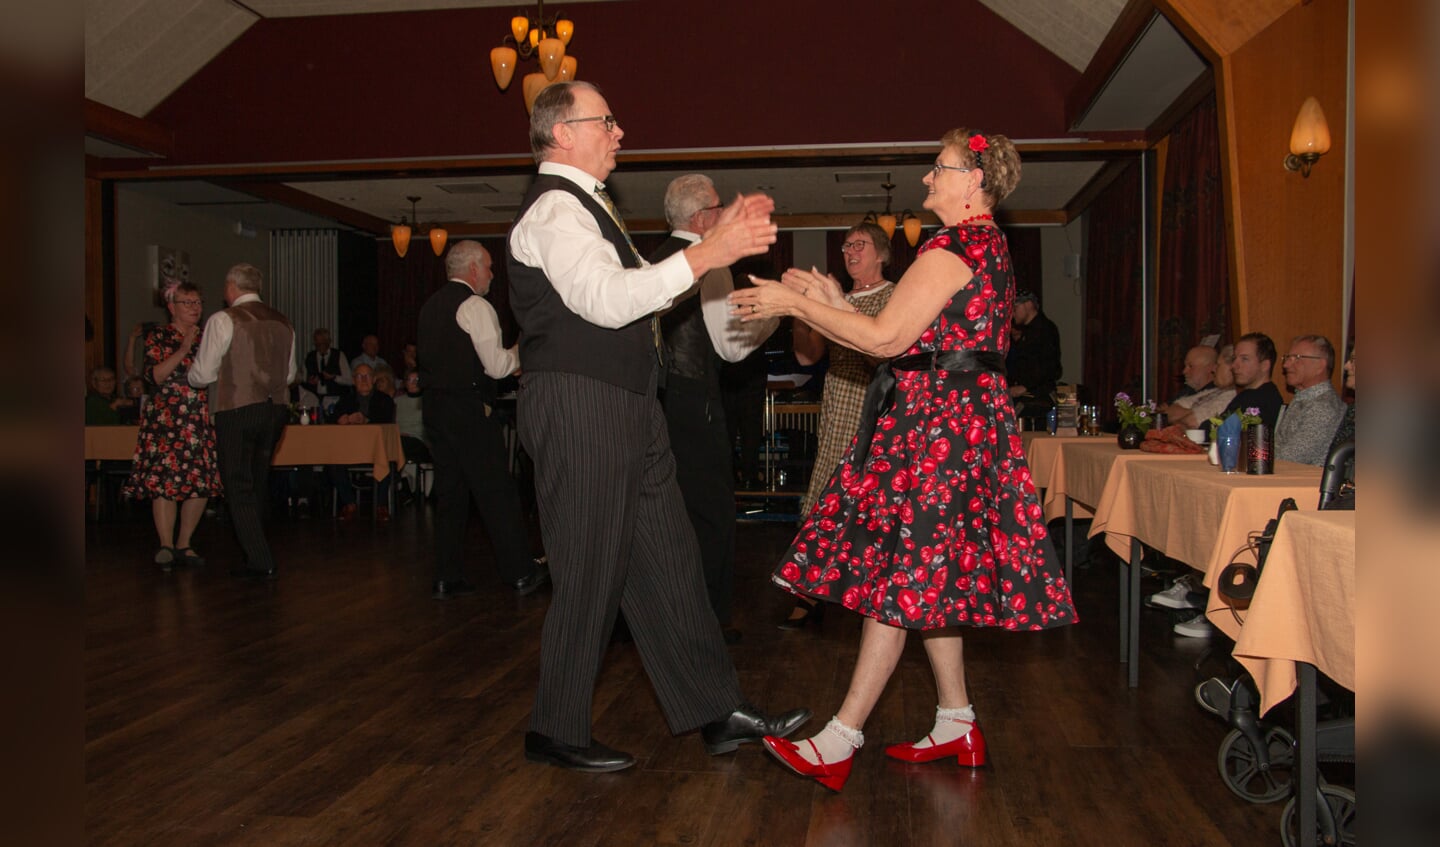 Dansgroep De iesselschotsers is kleding uit de '50er jaren. Foto: Liesbeth Spaansen